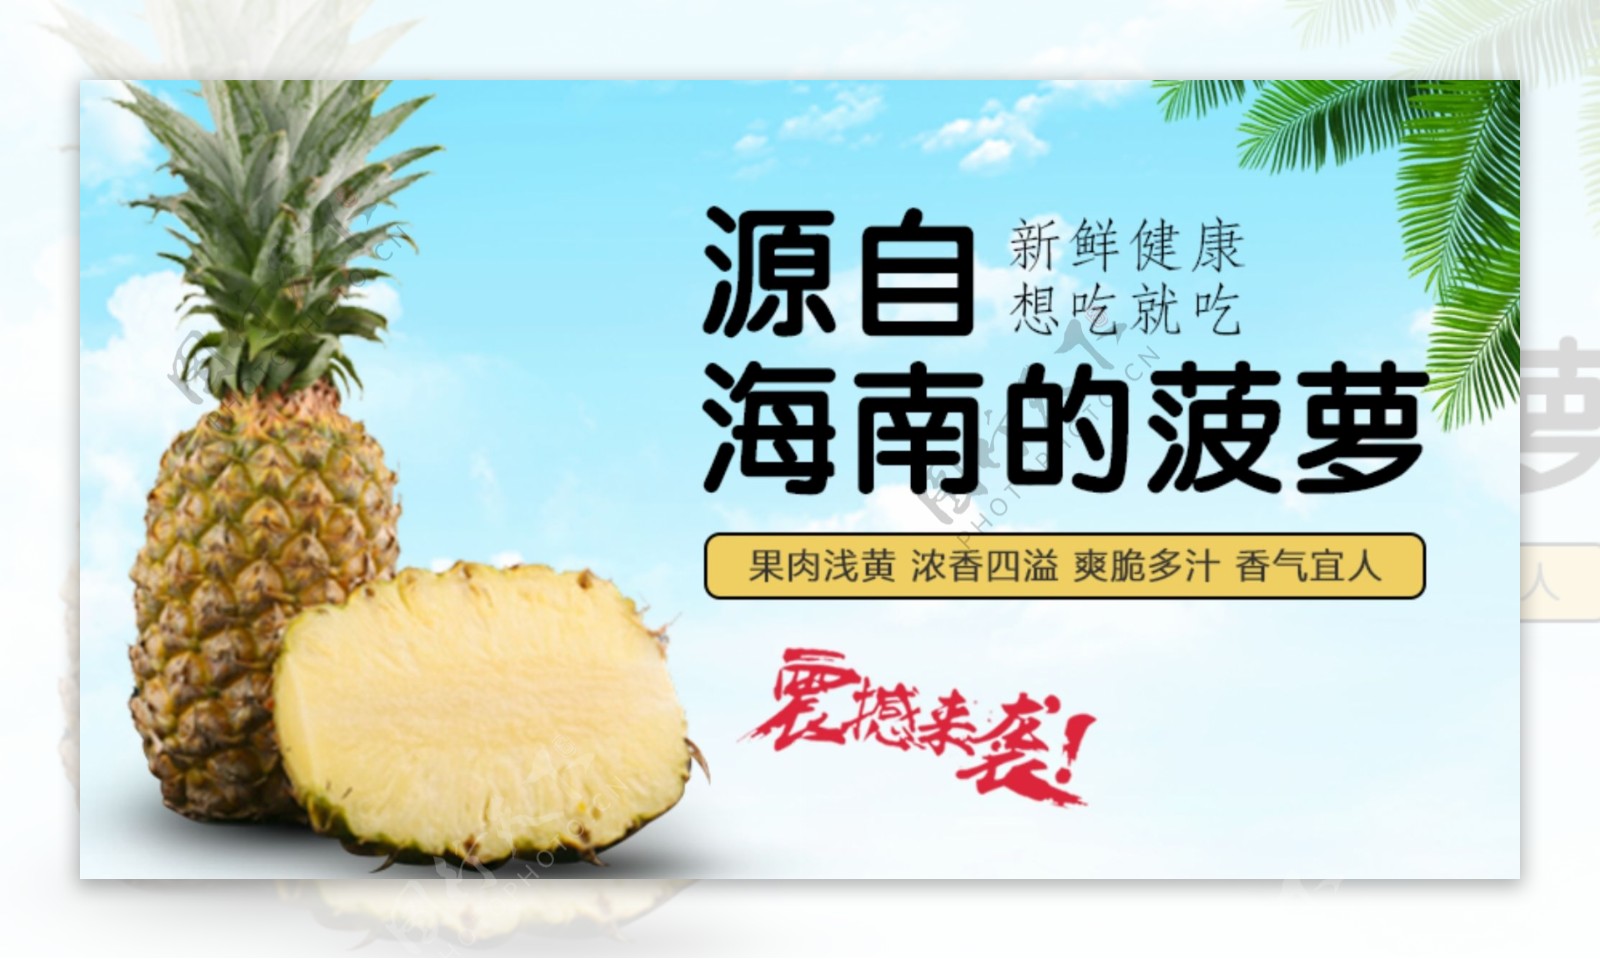 海南香水菠萝